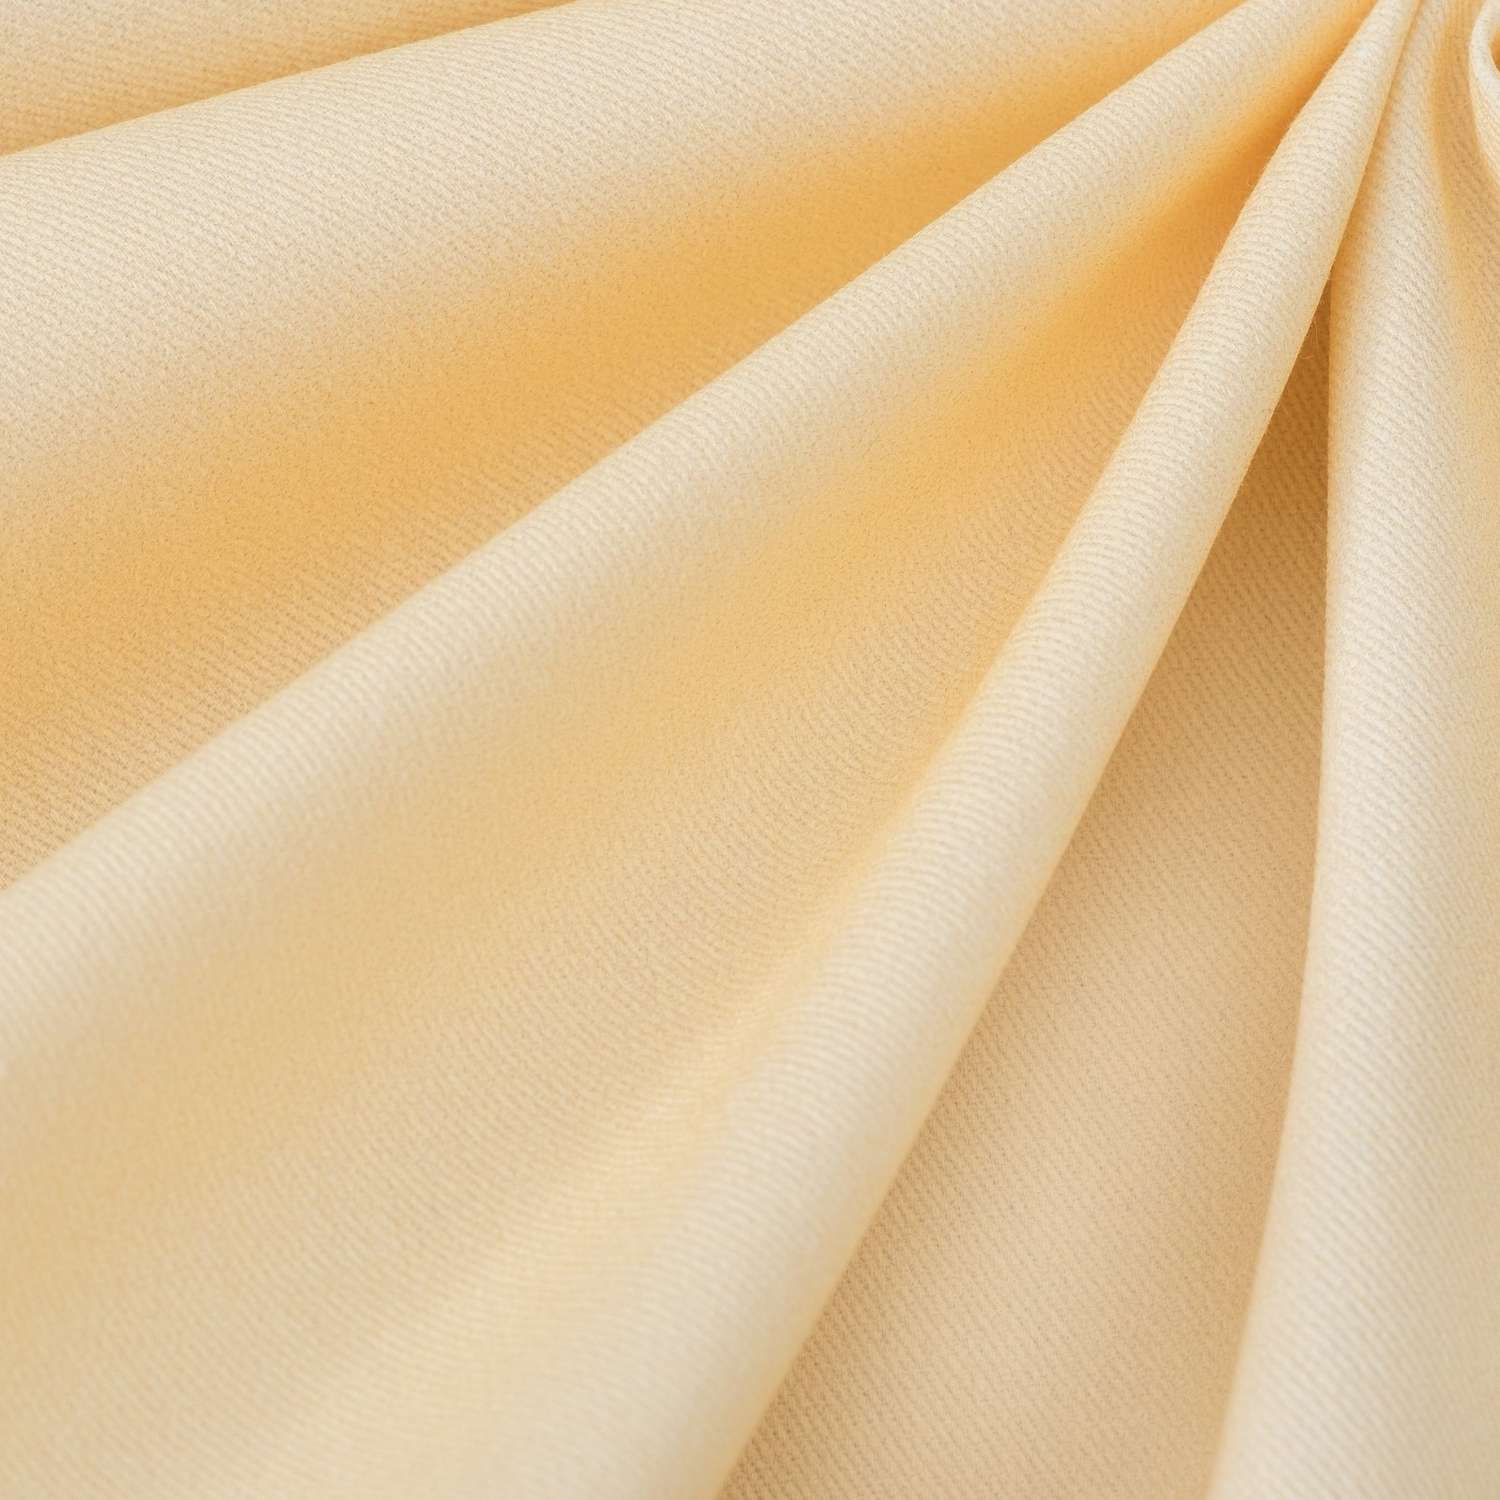 Скатерть Этель жёлто-коричневая 110х150 см саржа - фото 2